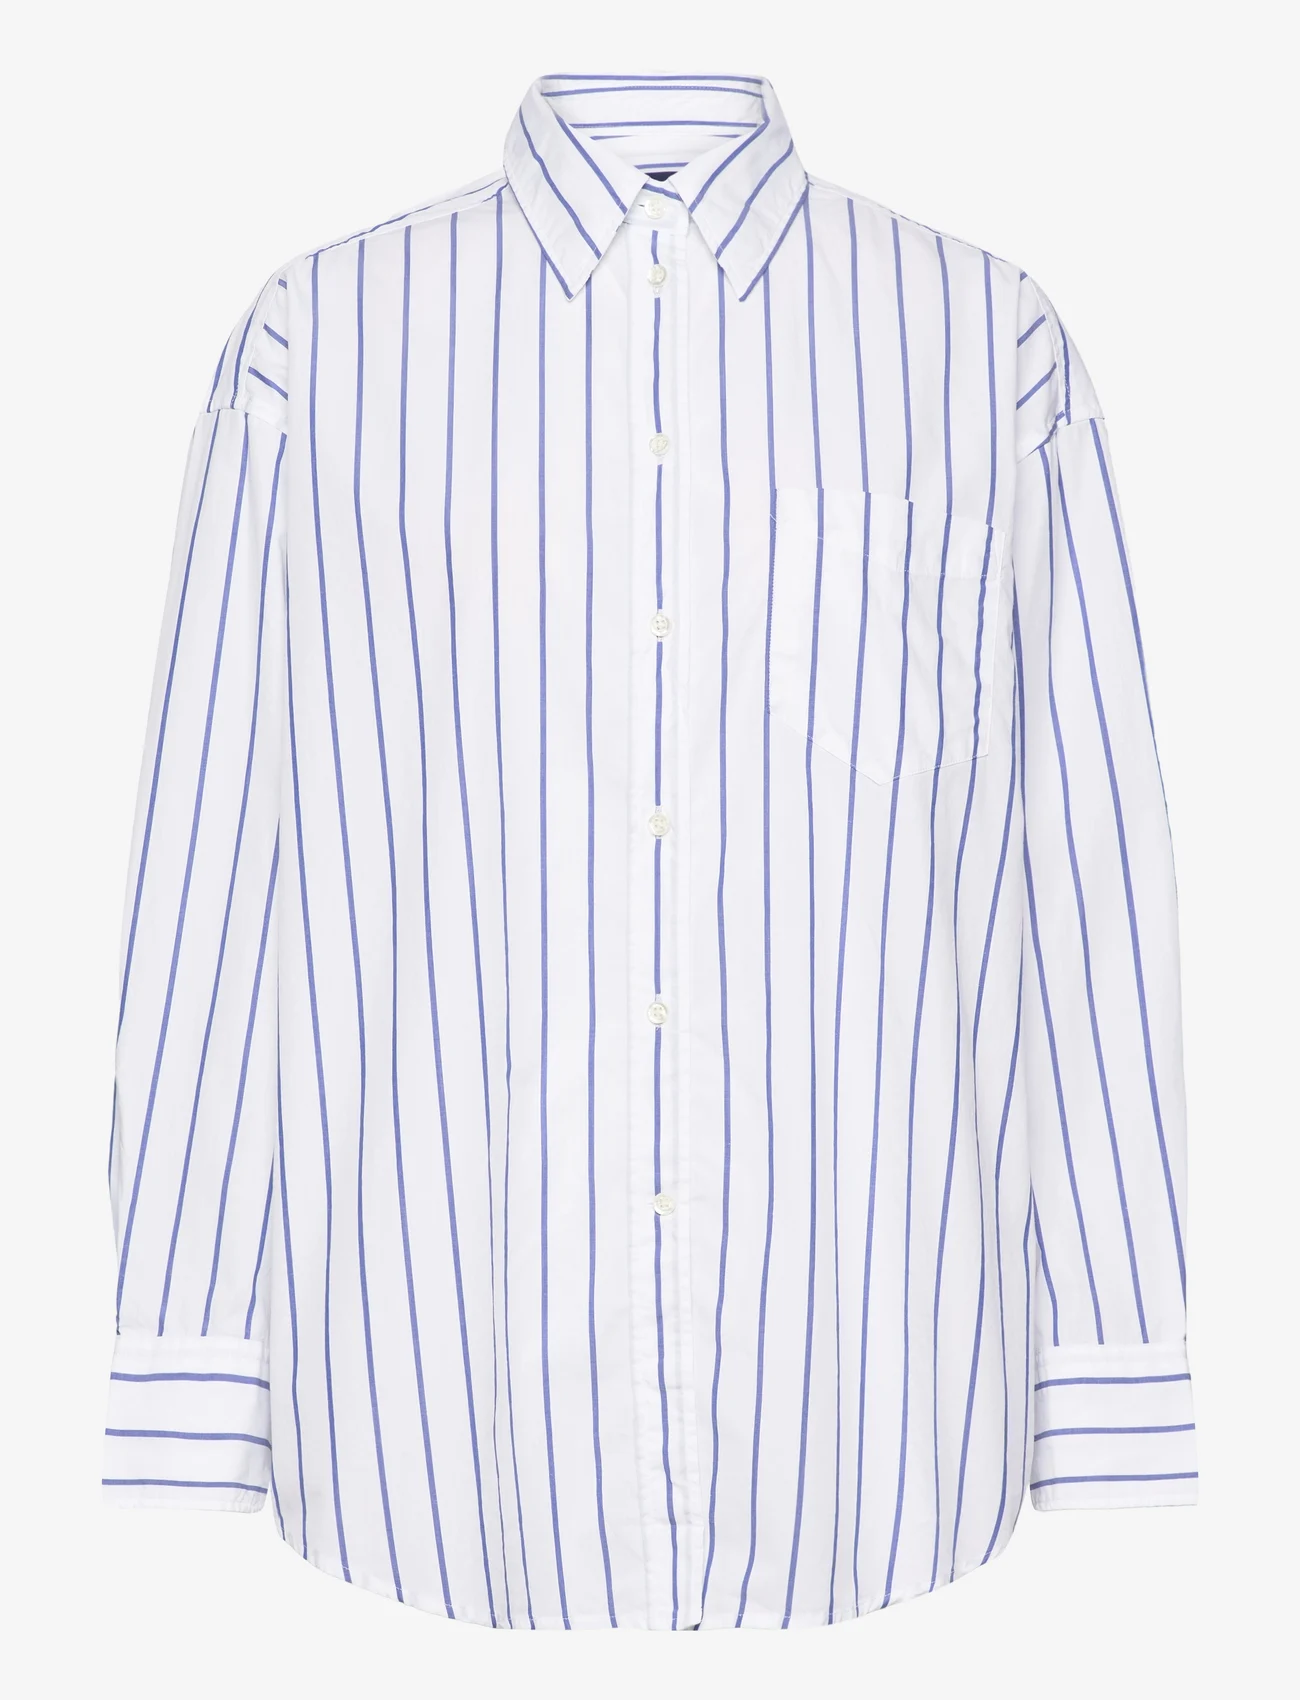 GANT - OS STRIPE SHIRT - marškiniai ilgomis rankovėmis - white - 0